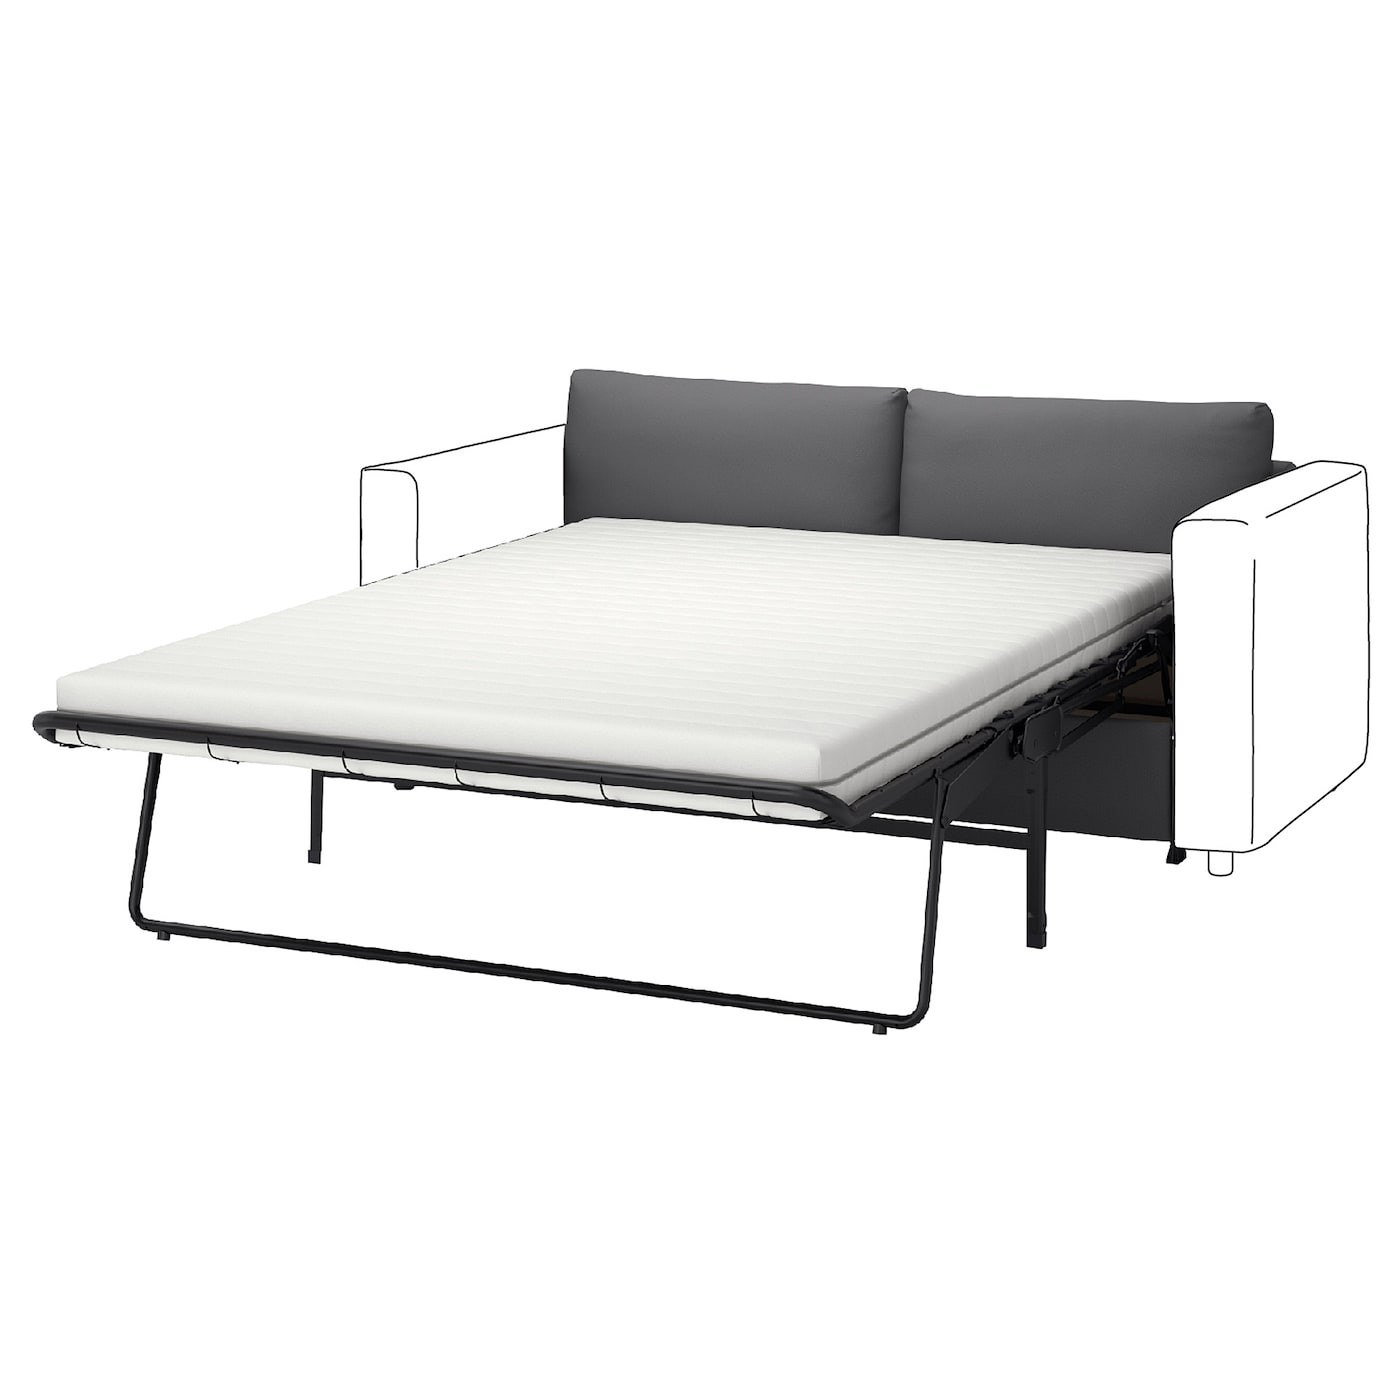 2-местный диван - IKEA VIMLE, 98x160см, черный, ВИМЛЕ ИКЕА